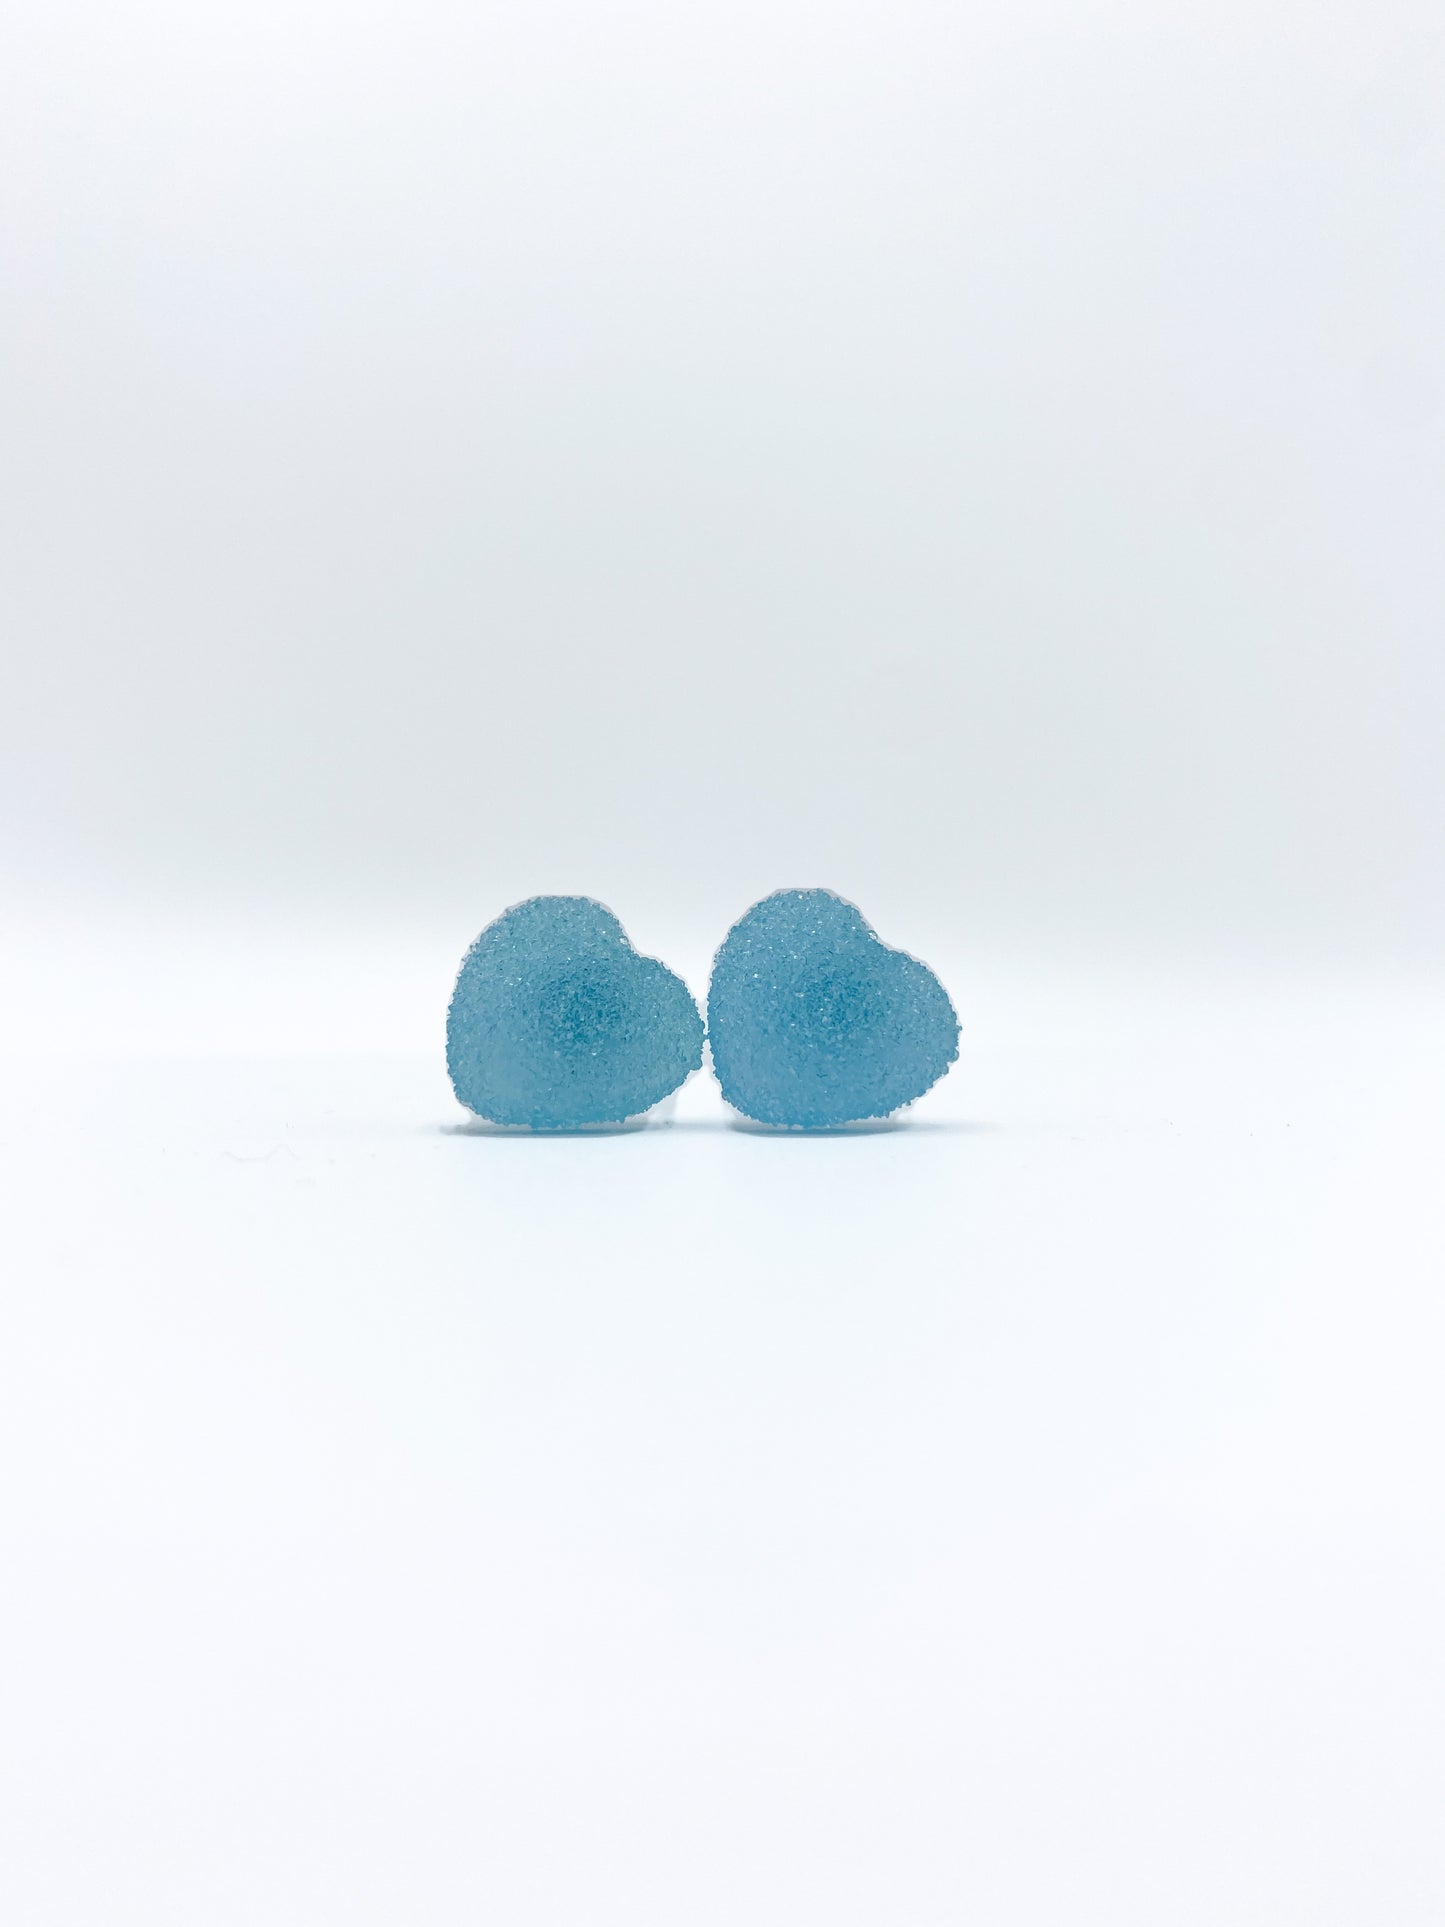 Heart Gummy Candy earrings